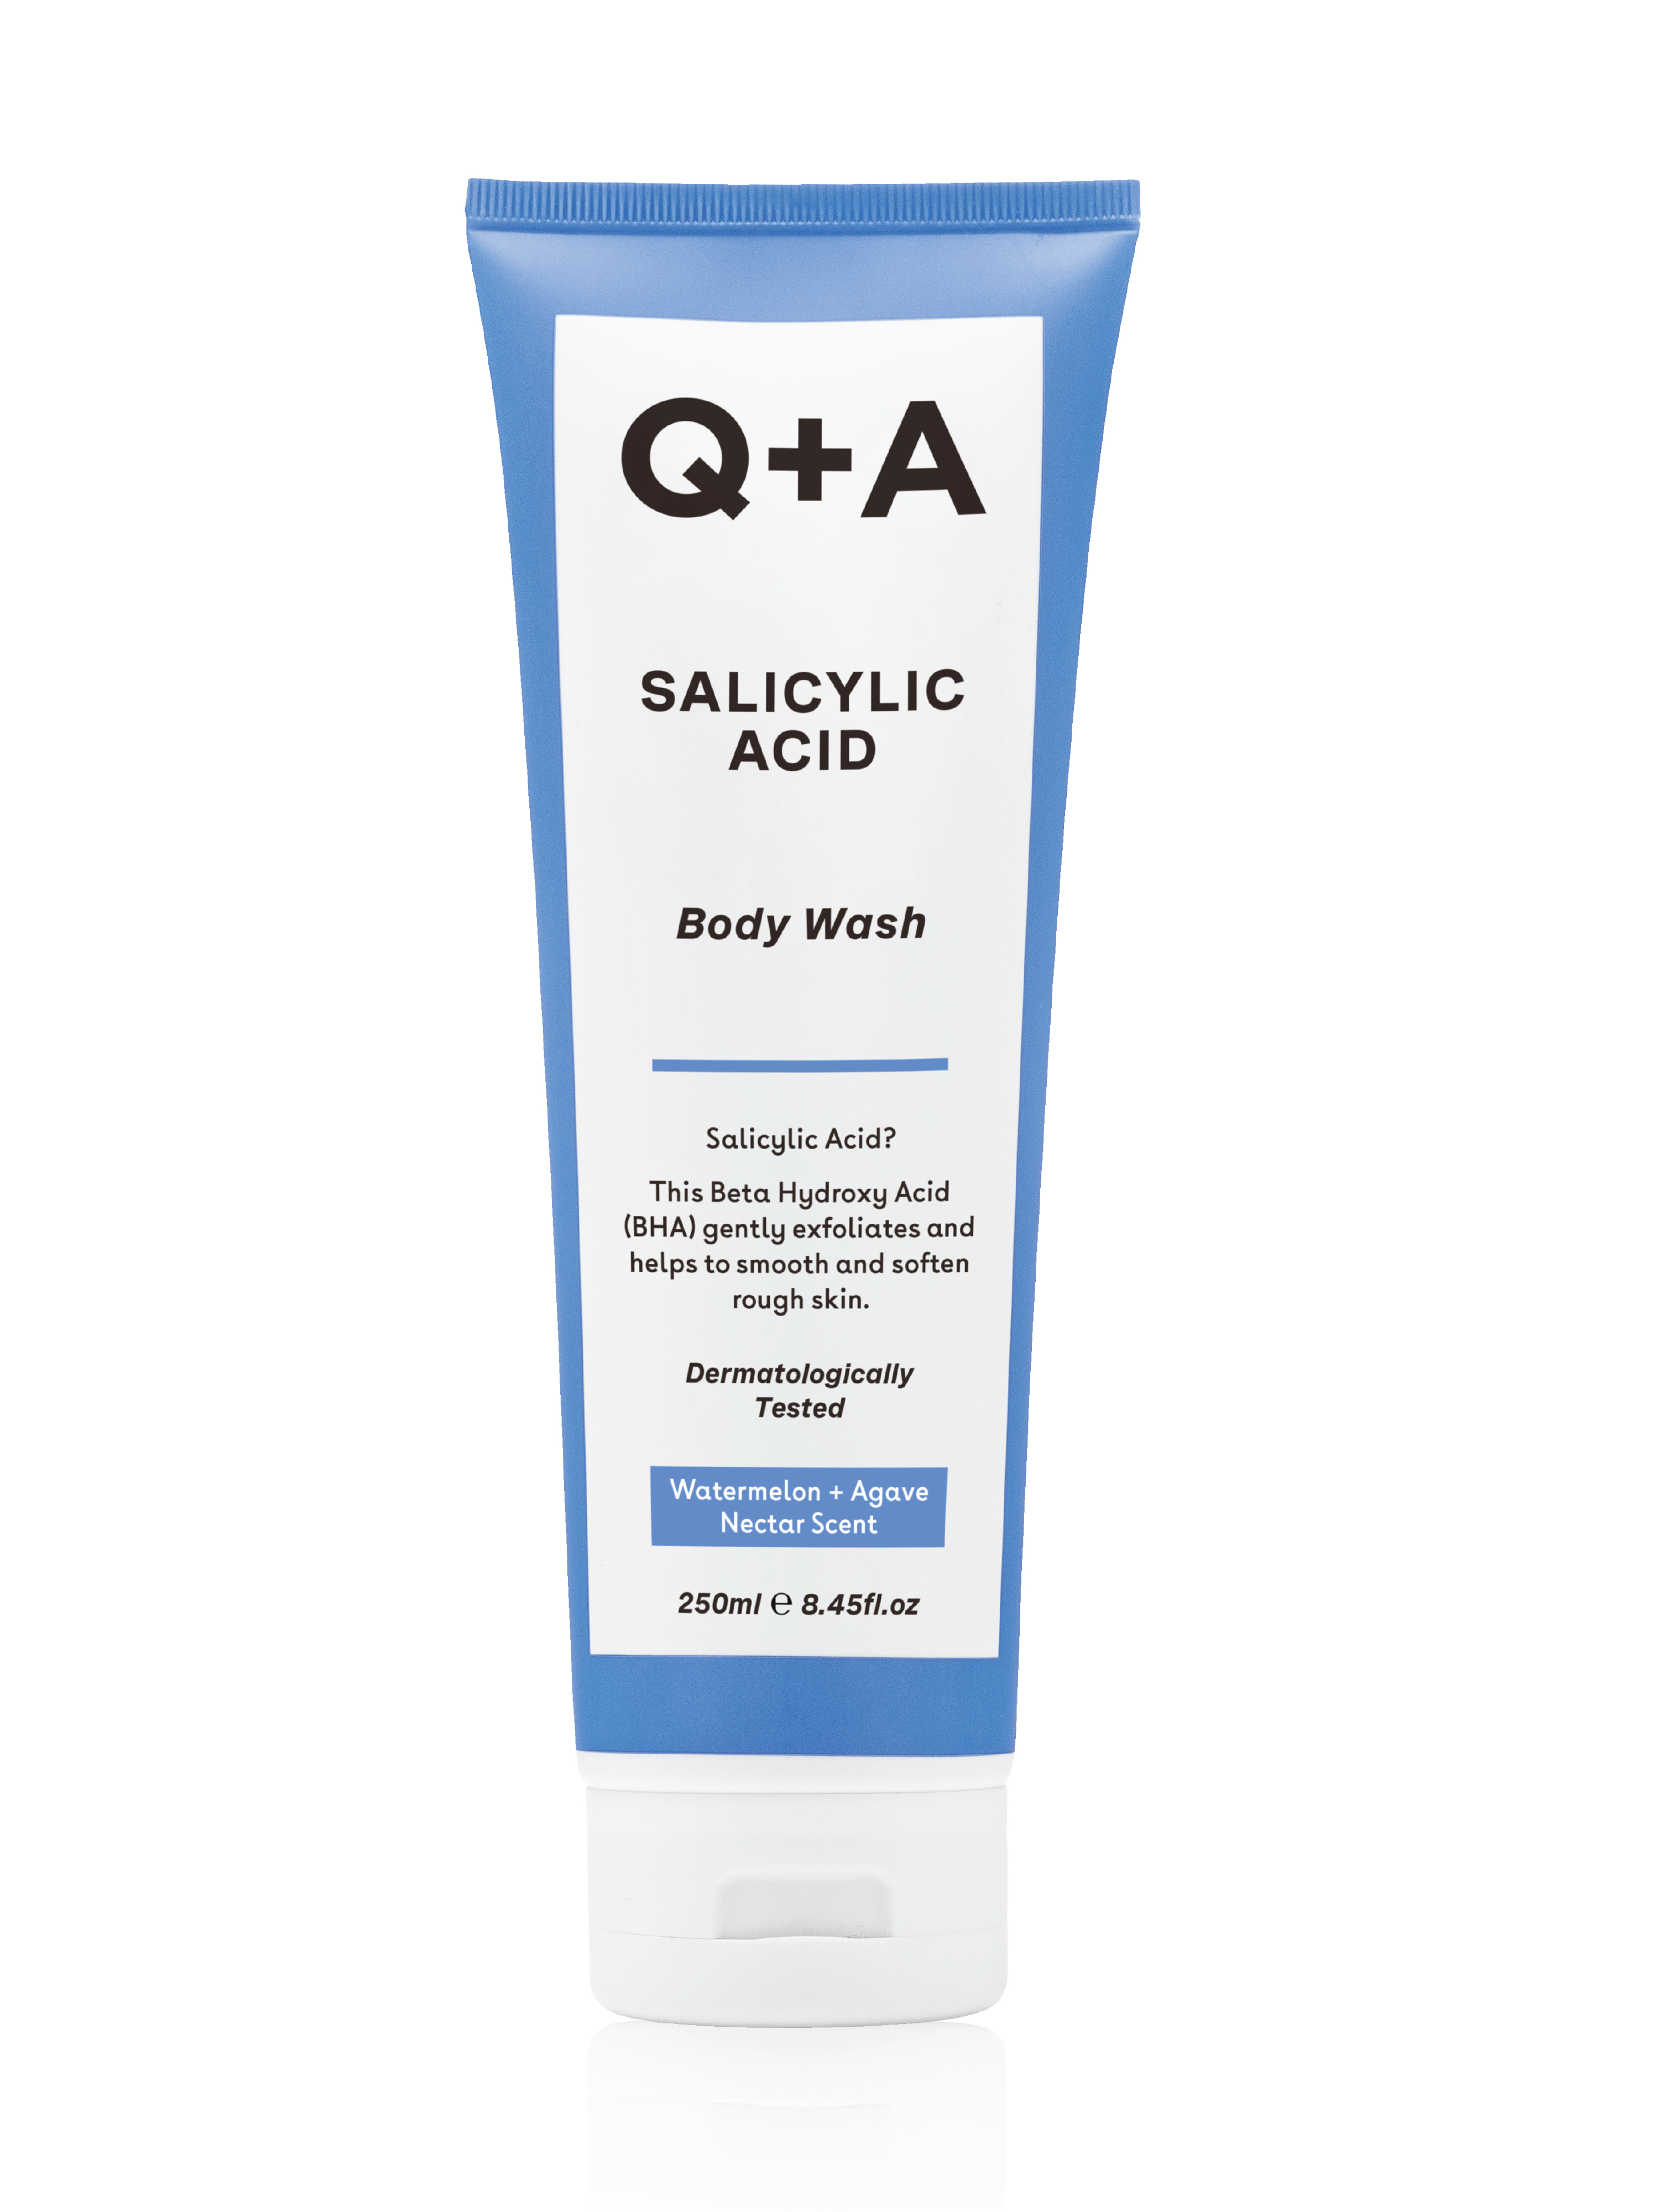 Q+A Salicylic Acid Body Wash, 250 ml